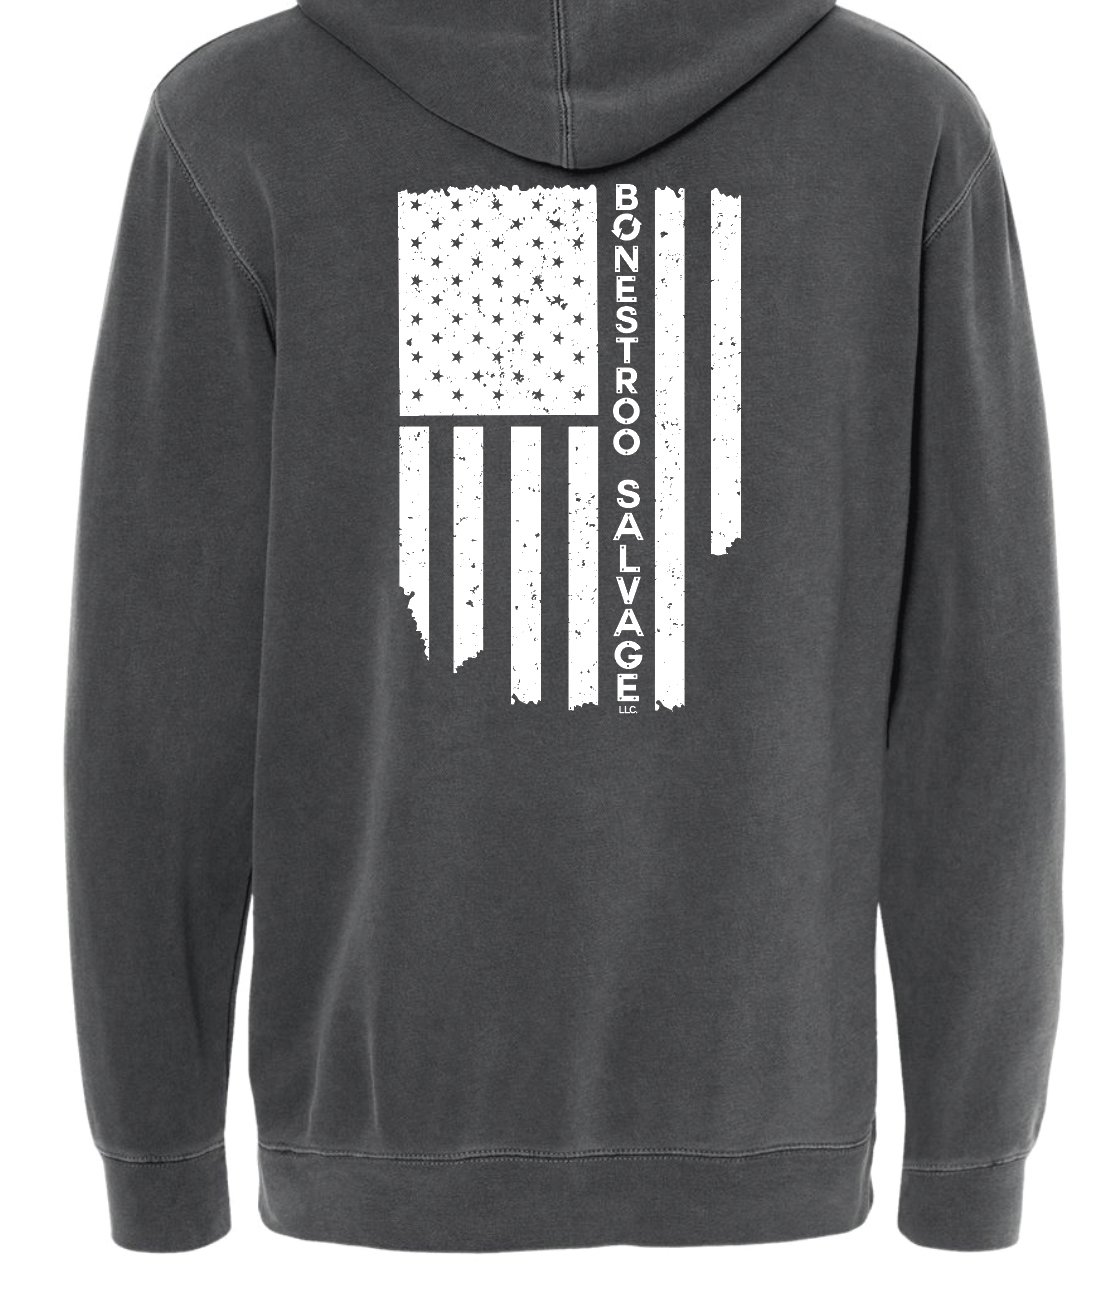 Flag Imprint Independent Crewneck Sweatshirt | BONESTROO23